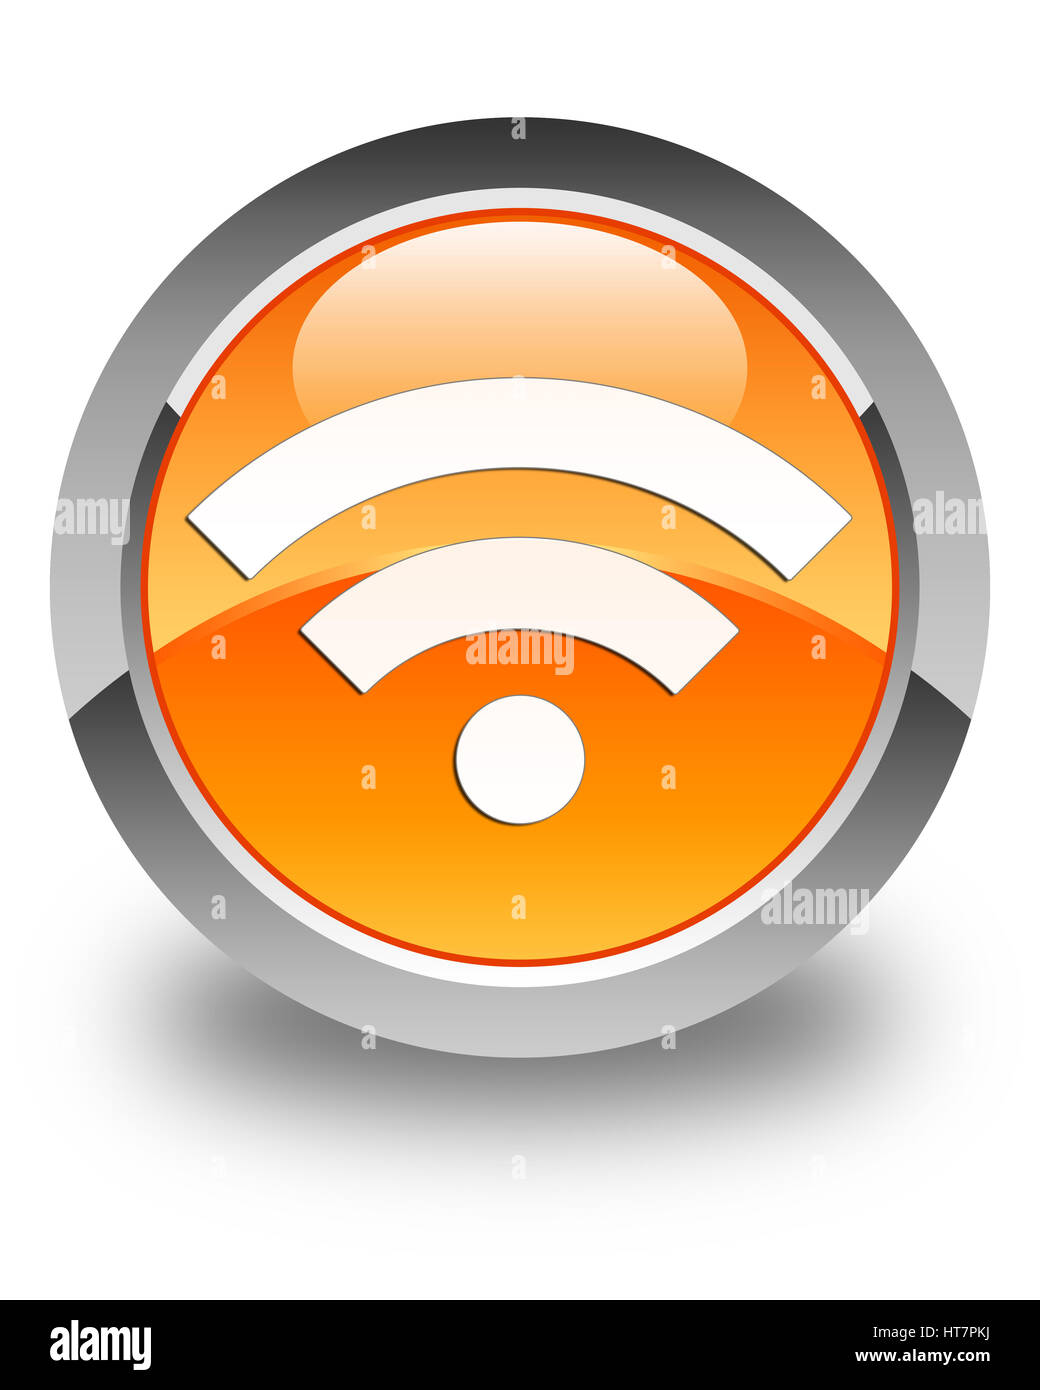 Connexion Wi-Fi au réseau local isolé sur l'icône bouton rond orange brillant abstract illustration Banque D'Images